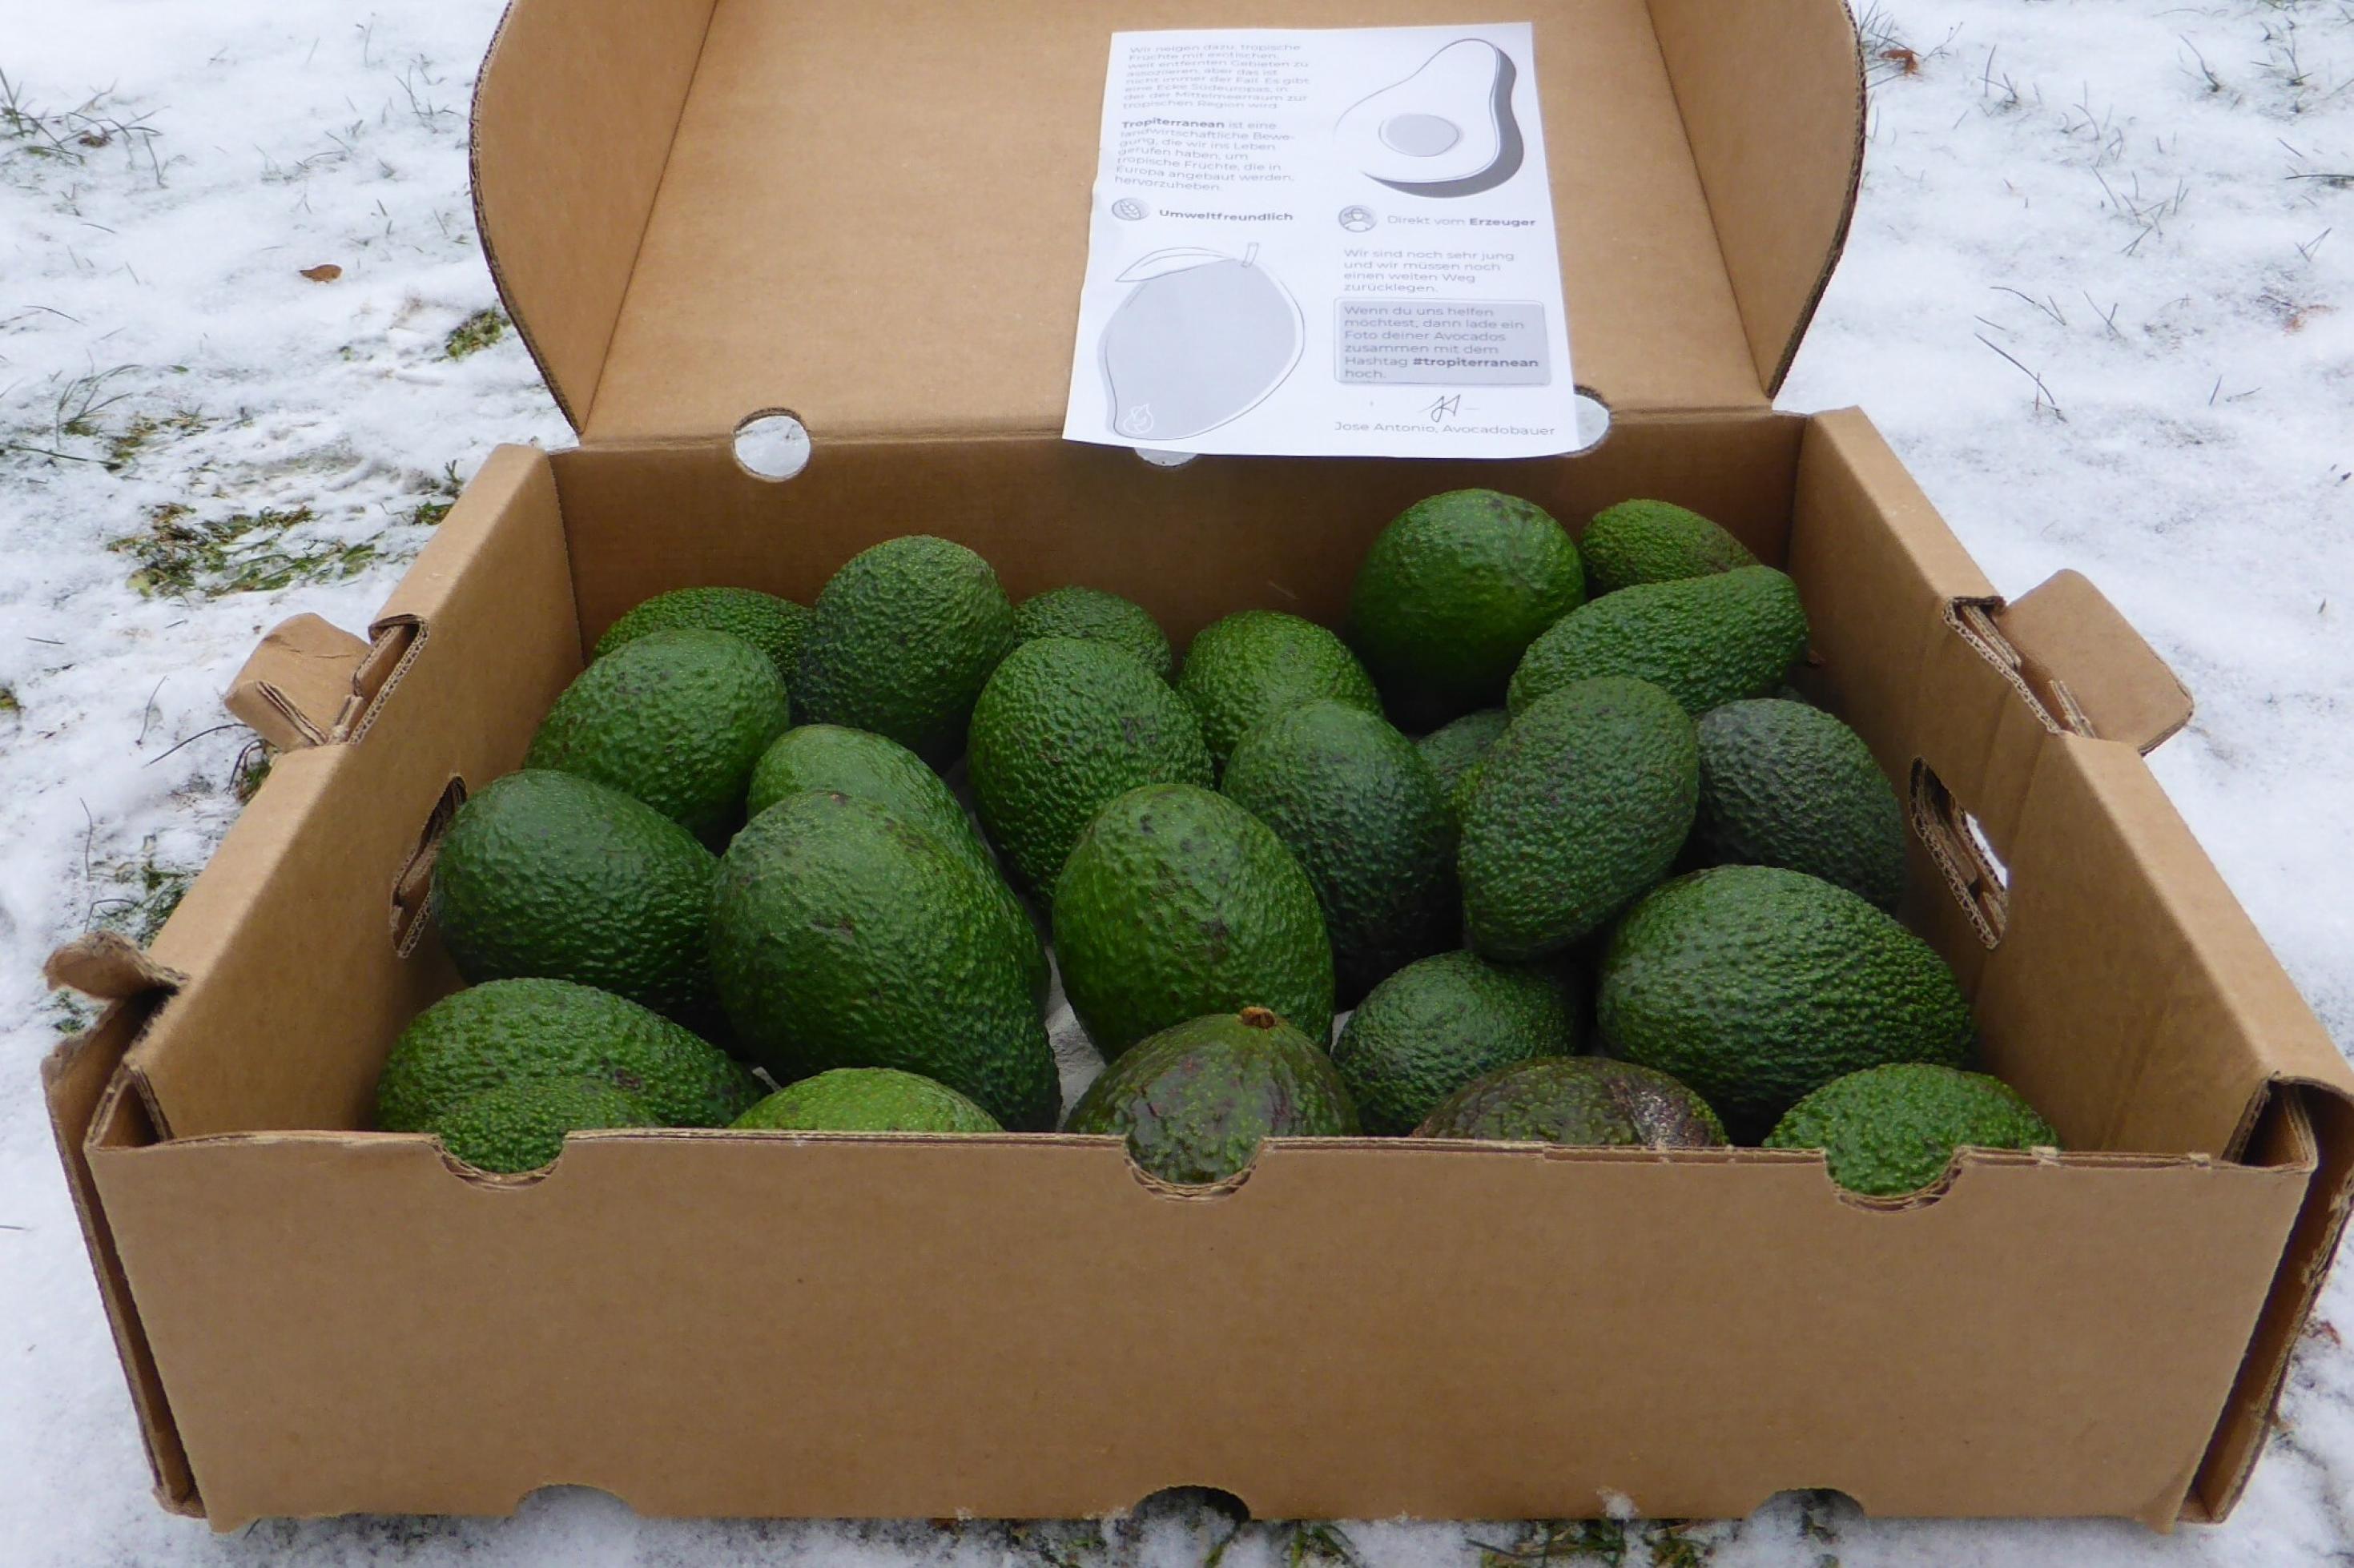 Geöffneter Karton mit vier Kilogramm Avocados auf verschneitem Rasen.